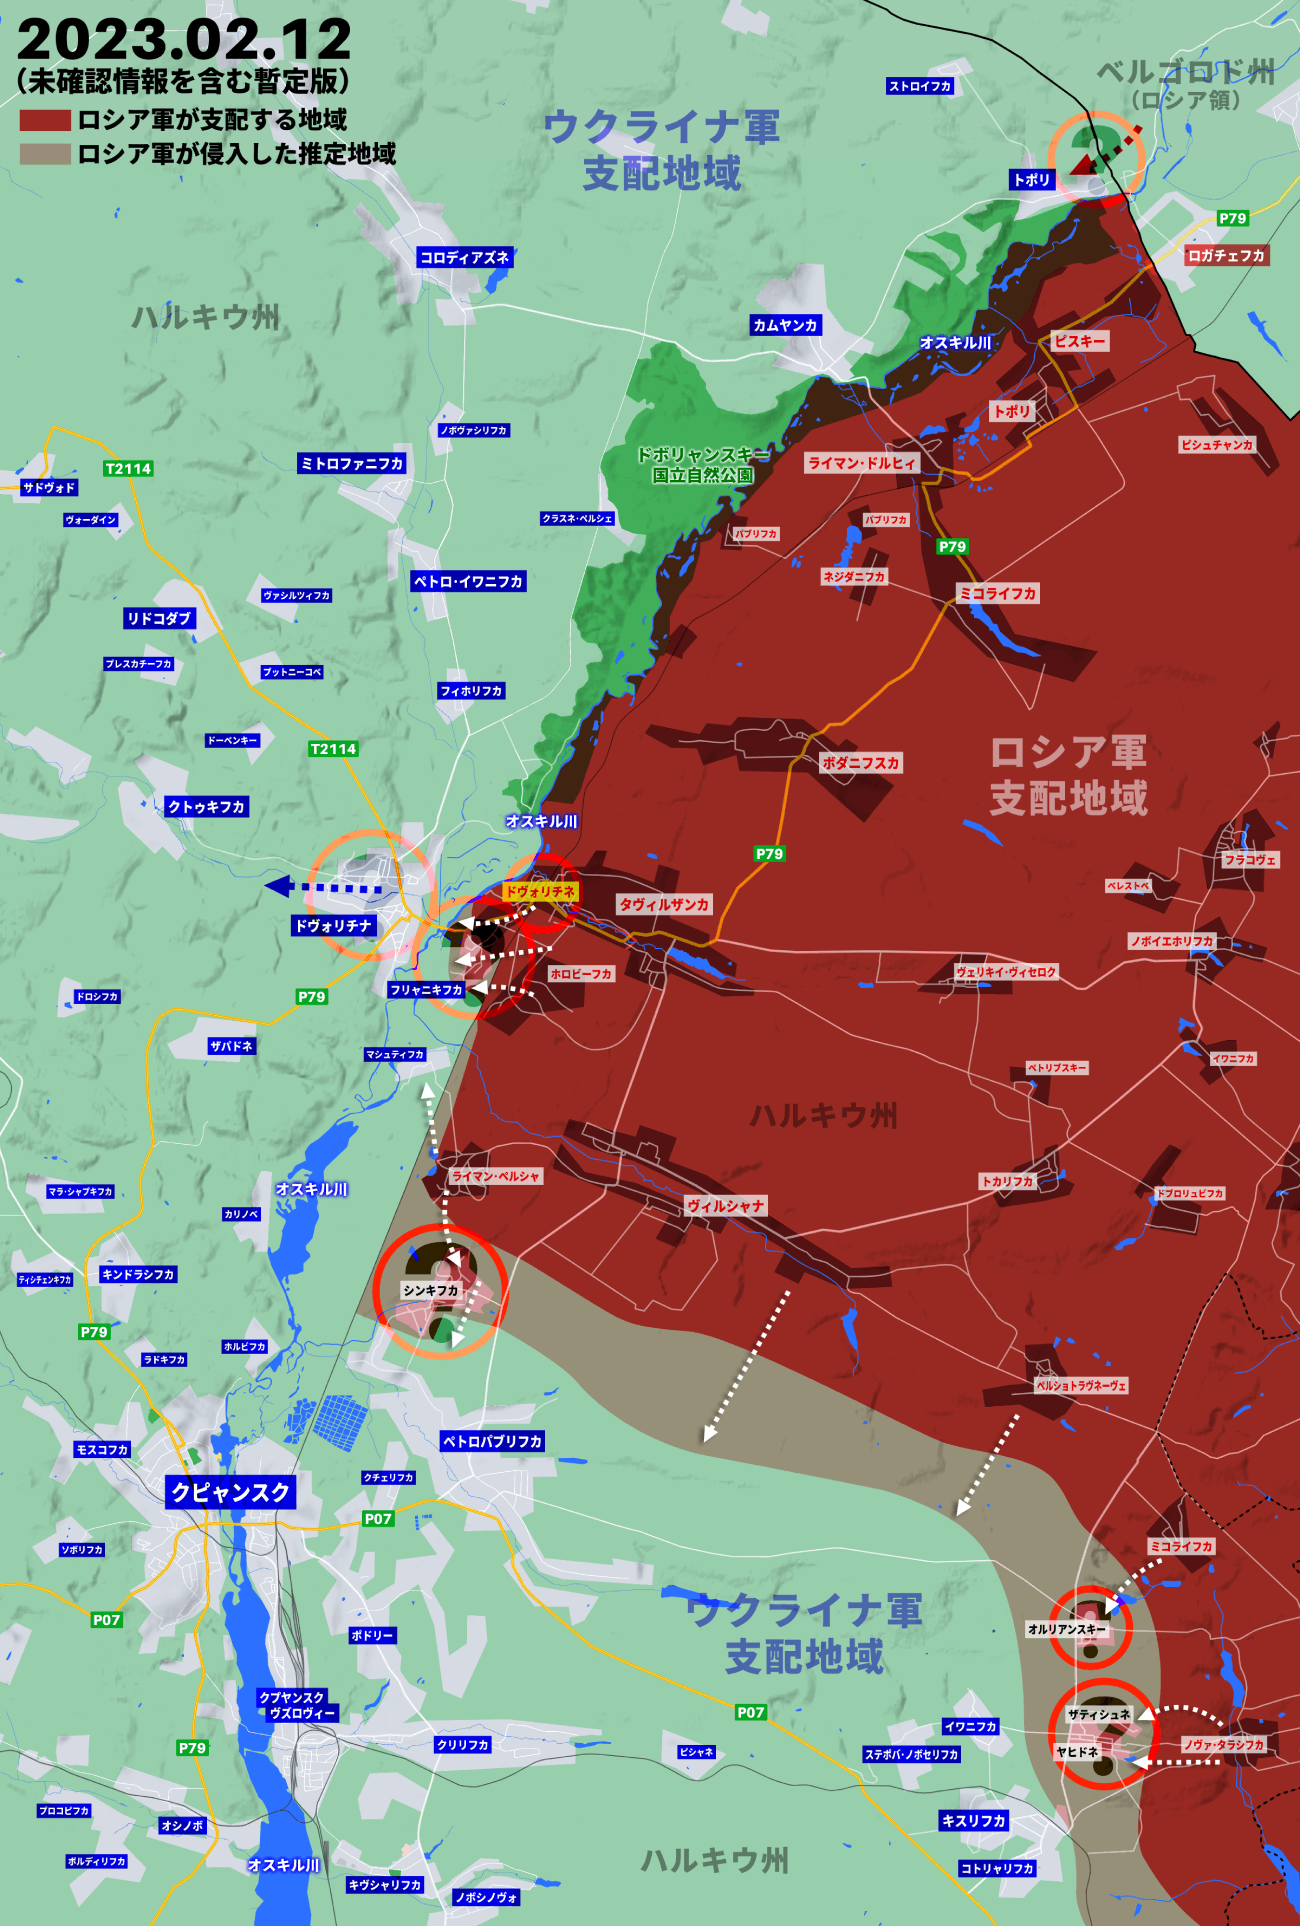 ウクライナ侵攻353日目の戦況、ロシア軍がクピャンスク方面でも積極攻勢か